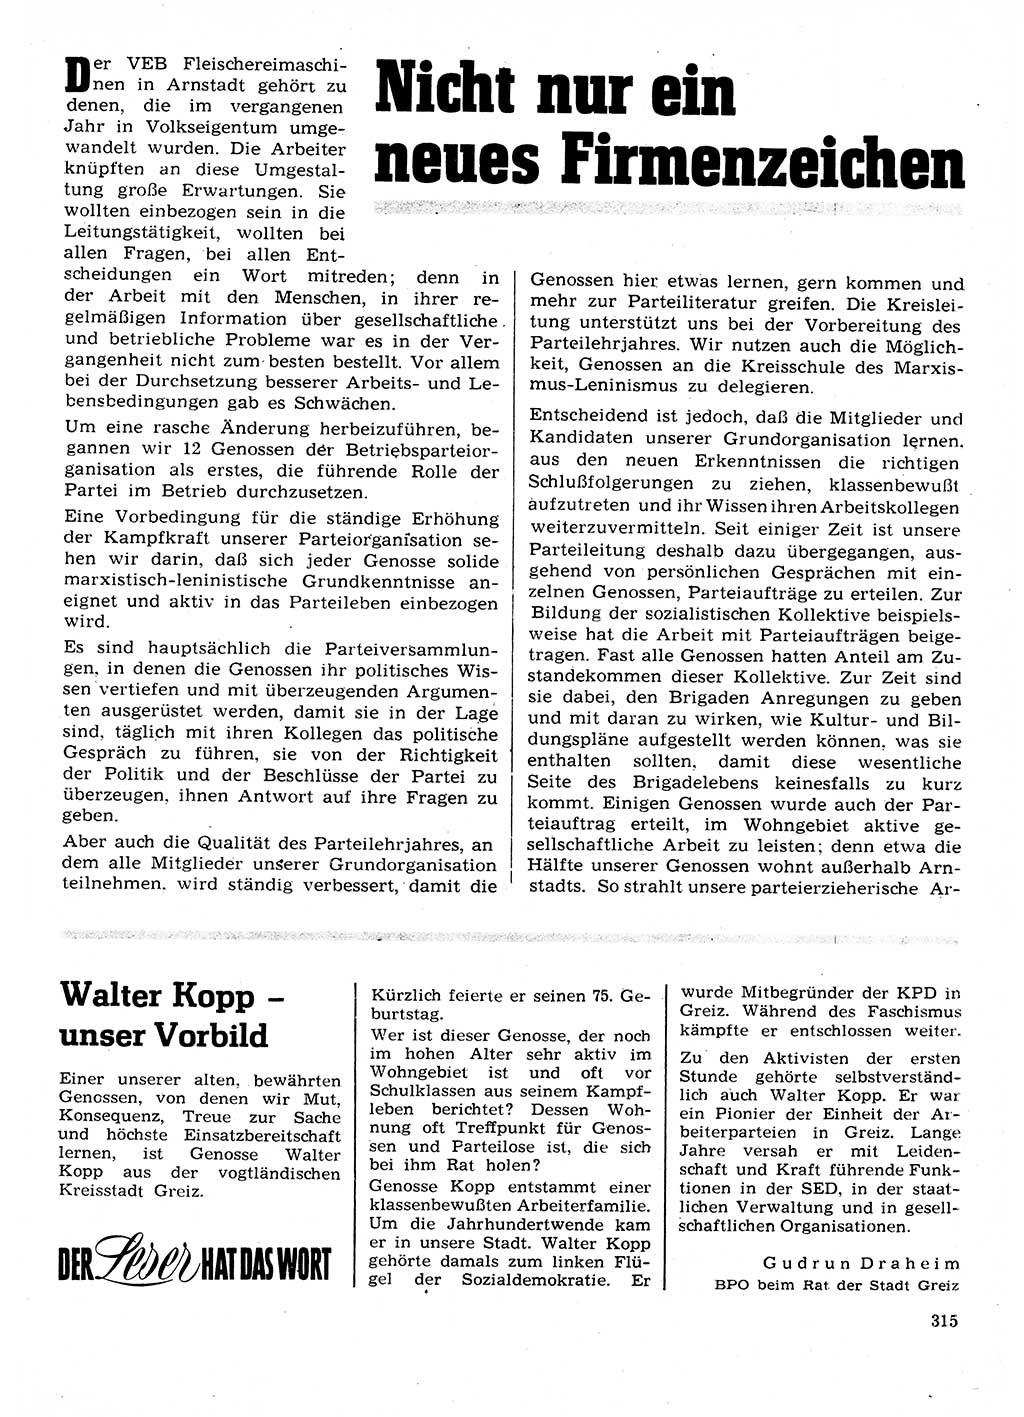 Neuer Weg (NW), Organ des Zentralkomitees (ZK) der SED (Sozialistische Einheitspartei Deutschlands) für Fragen des Parteilebens, 28. Jahrgang [Deutsche Demokratische Republik (DDR)] 1973, Seite 315 (NW ZK SED DDR 1973, S. 315)